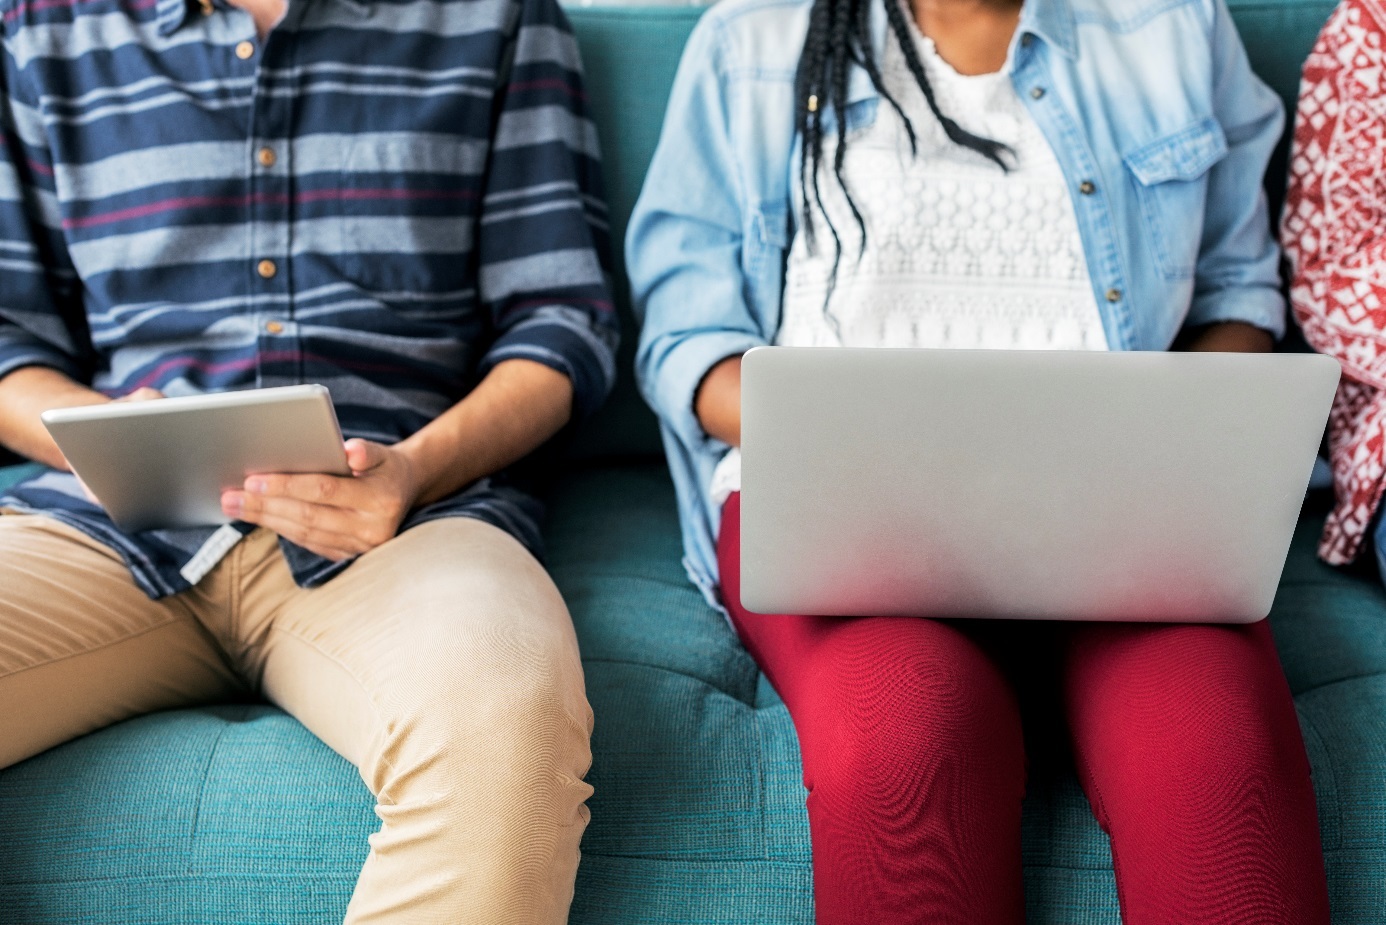 Junger Mann mit Tablet in der Hand und junge Frau mit Laptop auf dem Schoß sitzen nebeneinander.